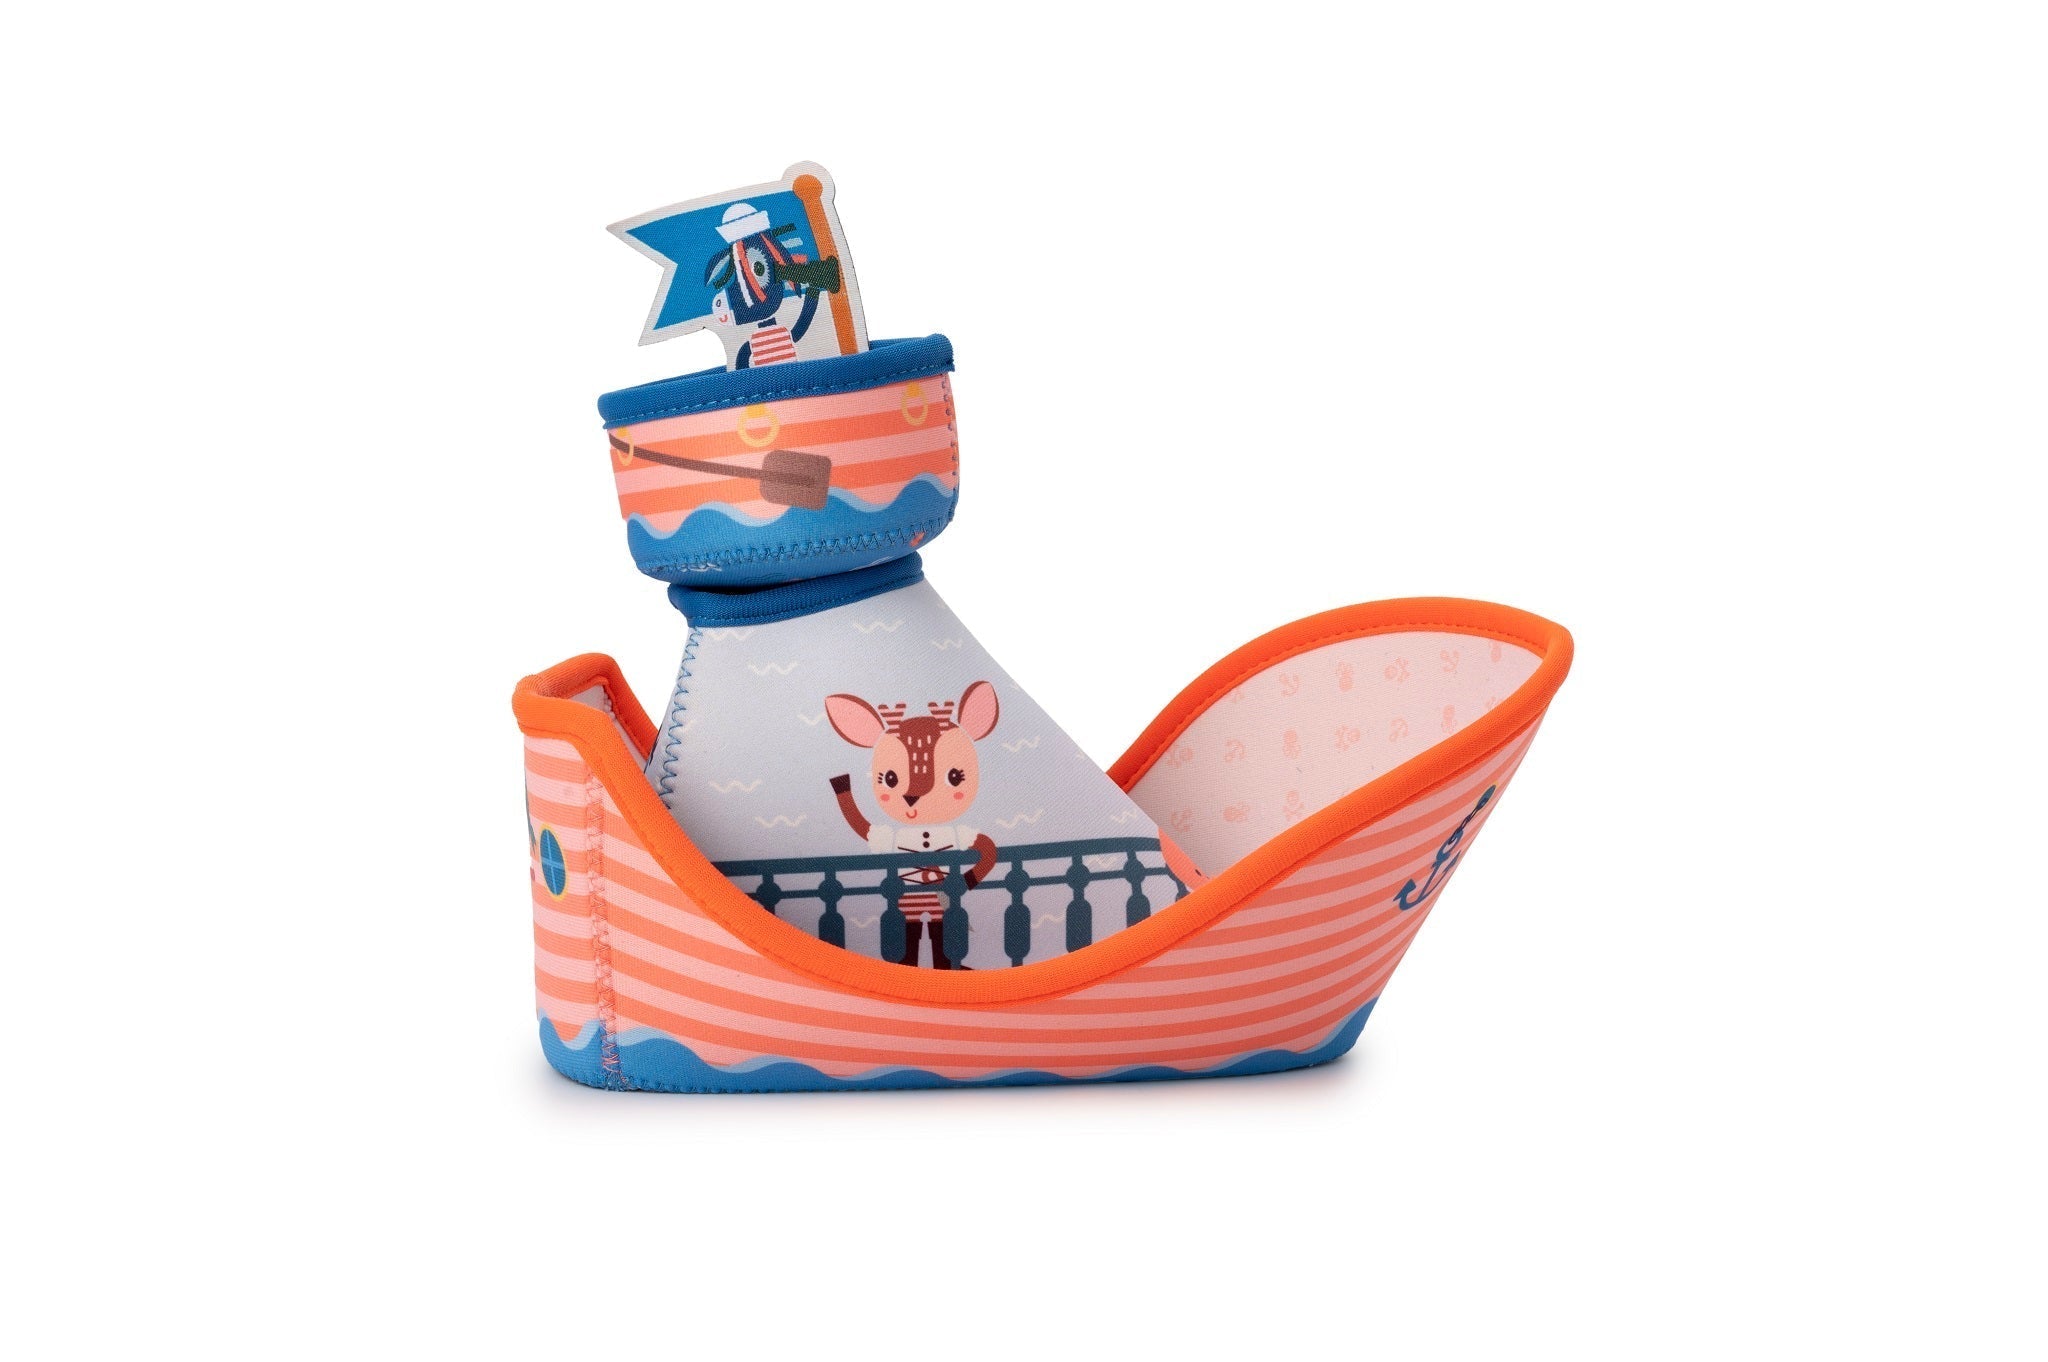 Lilliputiens Das Wunderabenteuer von Jack dem Piraten - Das zauberhafte Neoprenboot für unendlichen Wasserspaß!